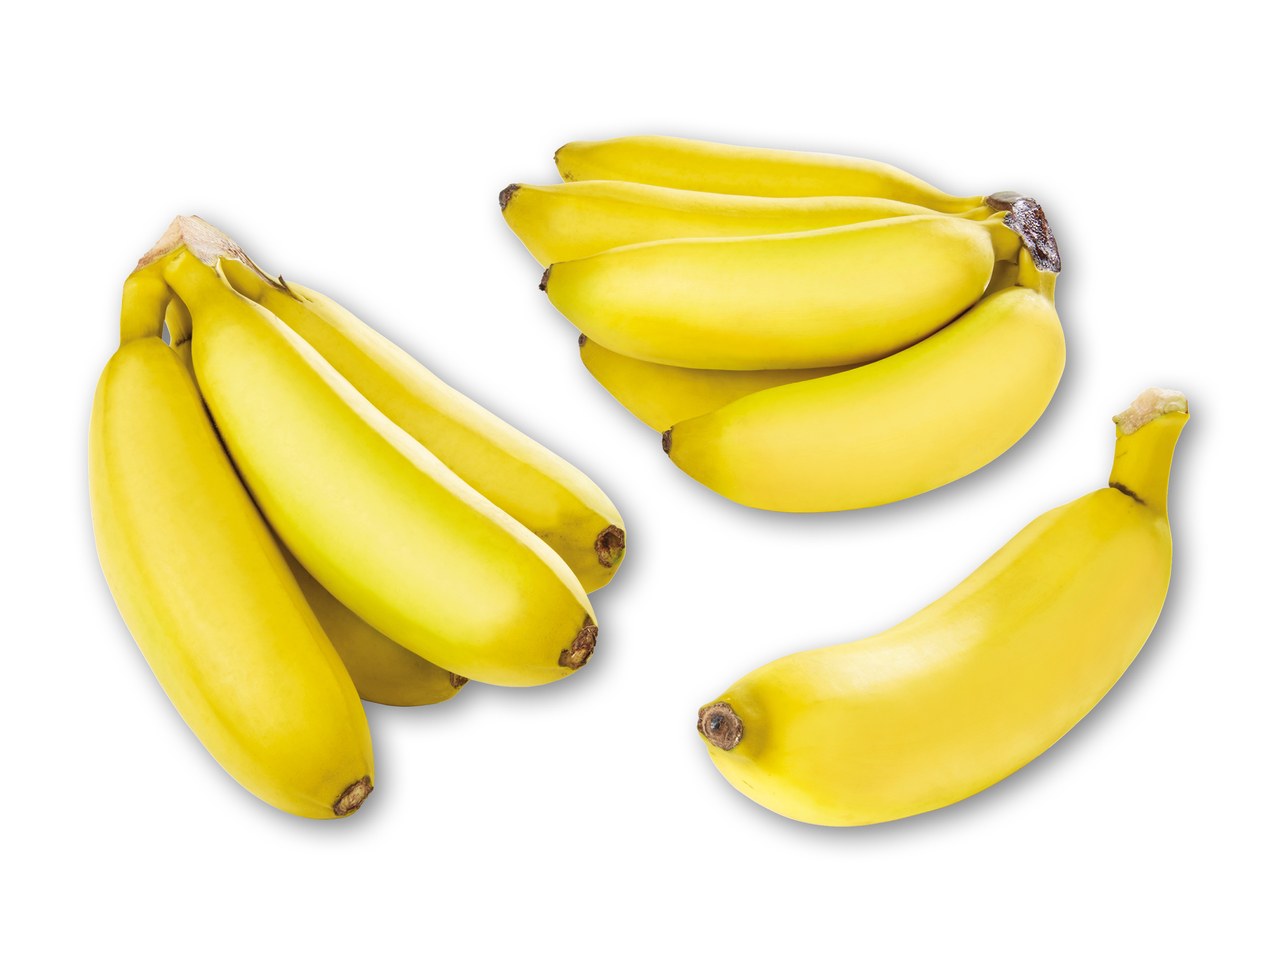 Børne bananer i pose